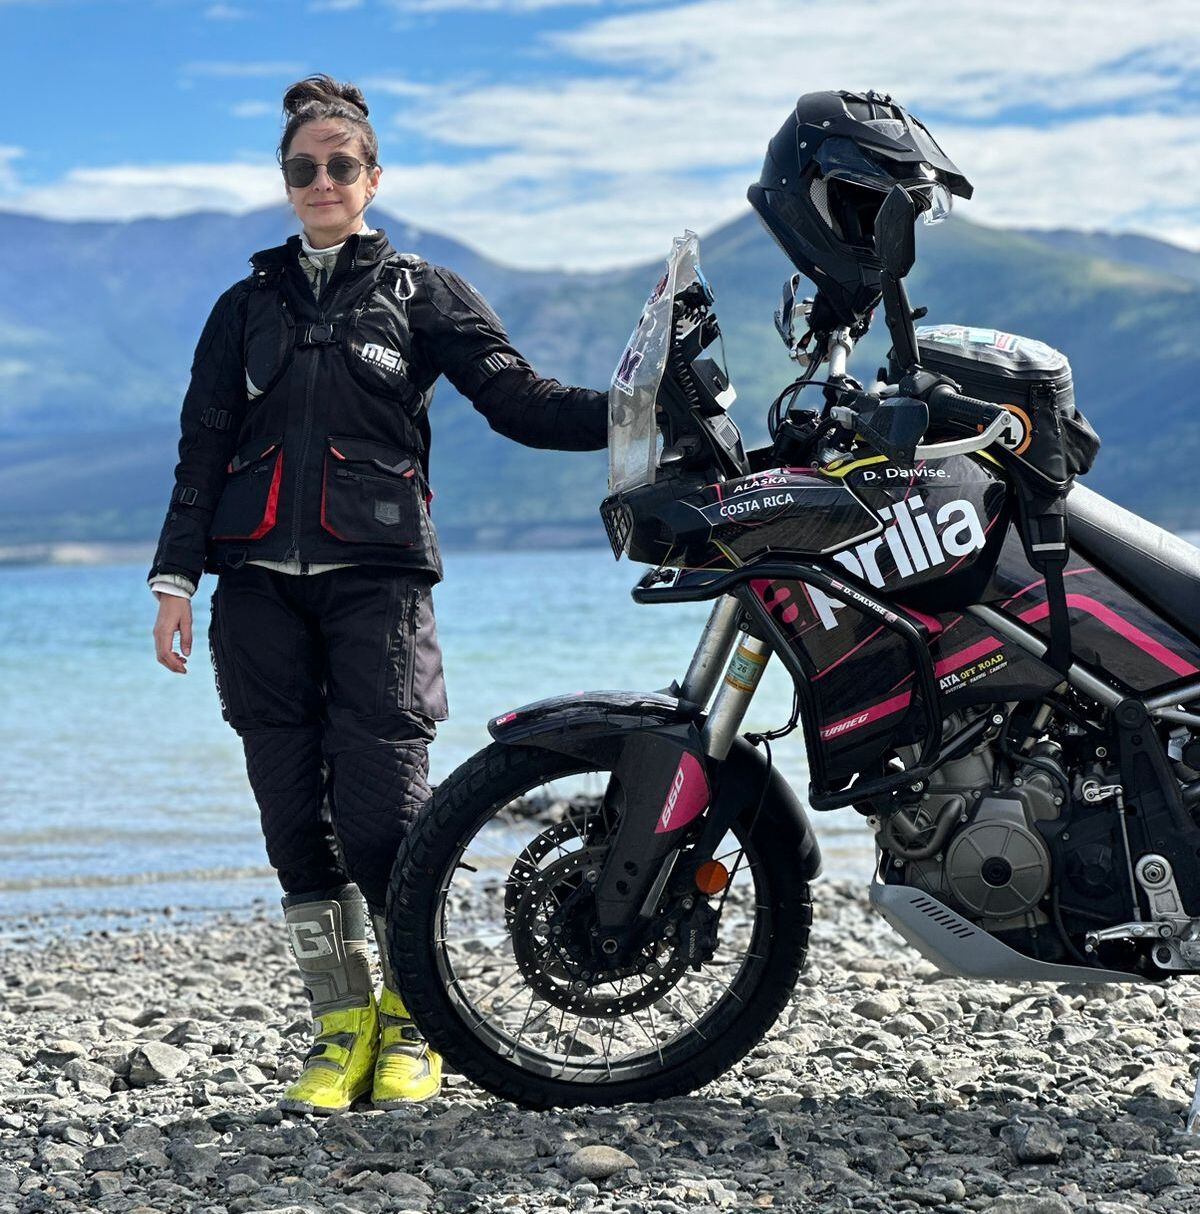 El modelo de la motocicleta de Dayhiana Dalvise es una Aprilia Tuareg 660, que se distingue por ser de color negro con rayas rosas. En sus redes sociales ha narrado el mantenimiento que le ha dado para que ruede a la perfección hasta Alaska.